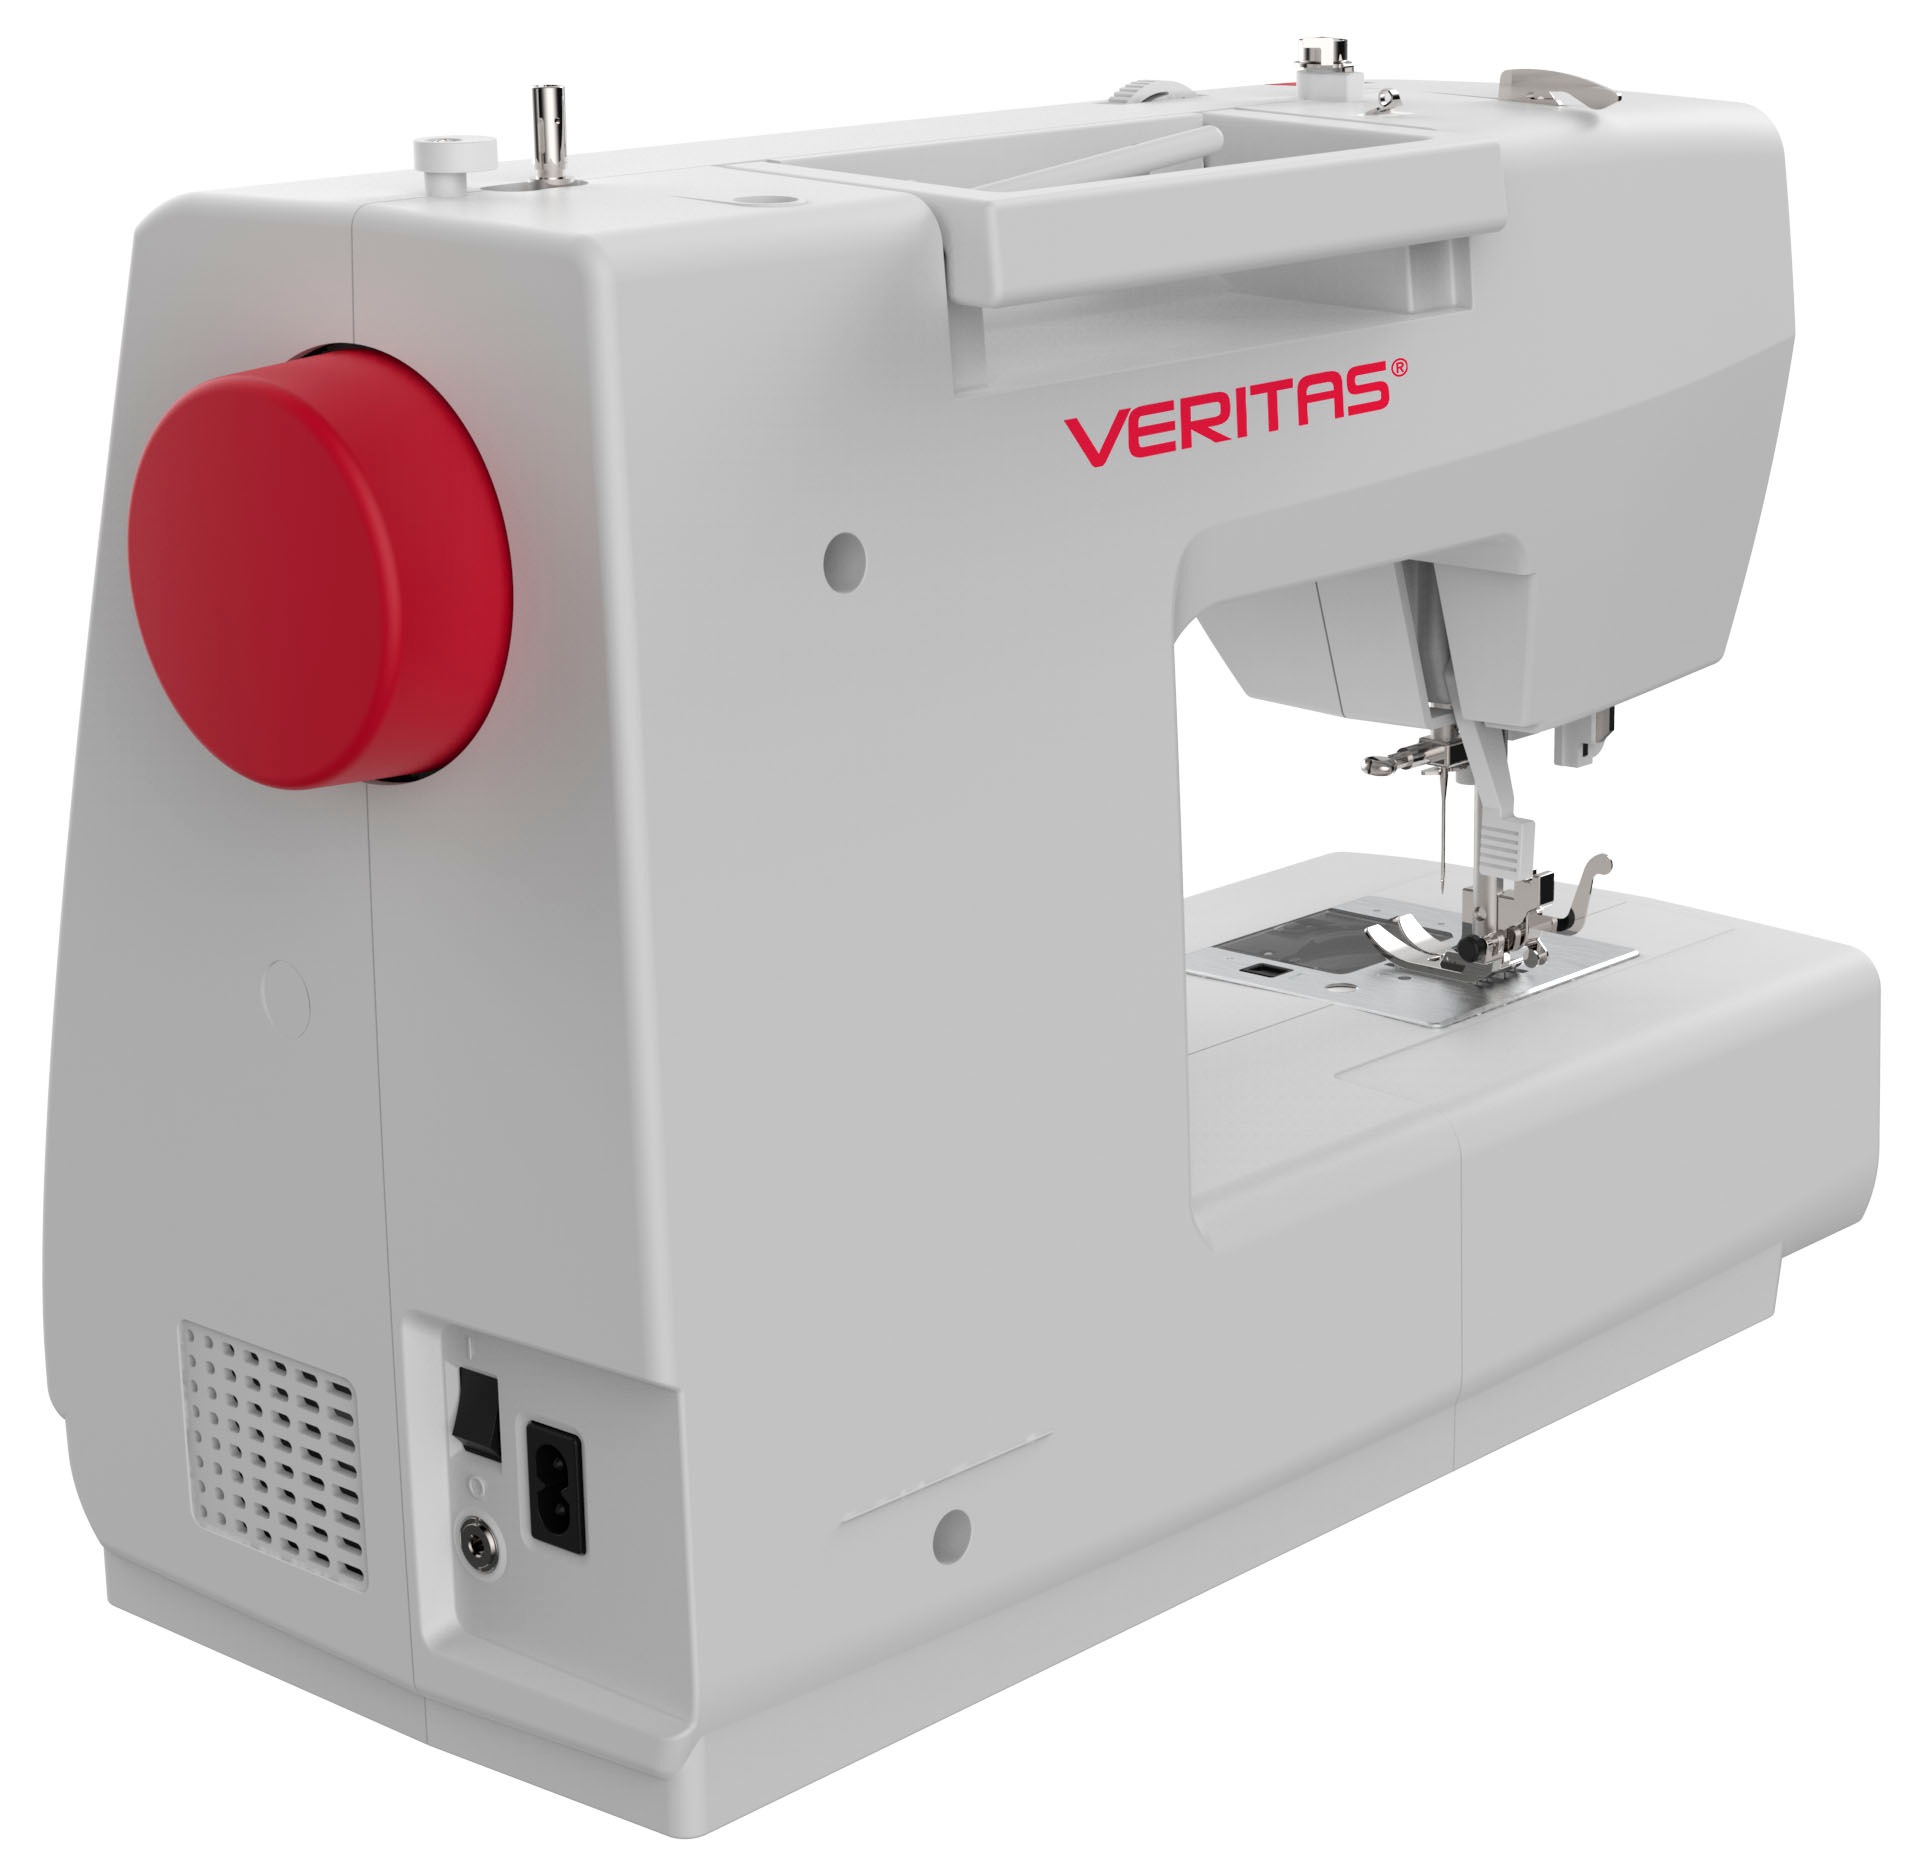 Veritas Computer-Nähmaschine »Veritas Technologie Modernste Näharbeiten Programme, online Claire«, bei für 197